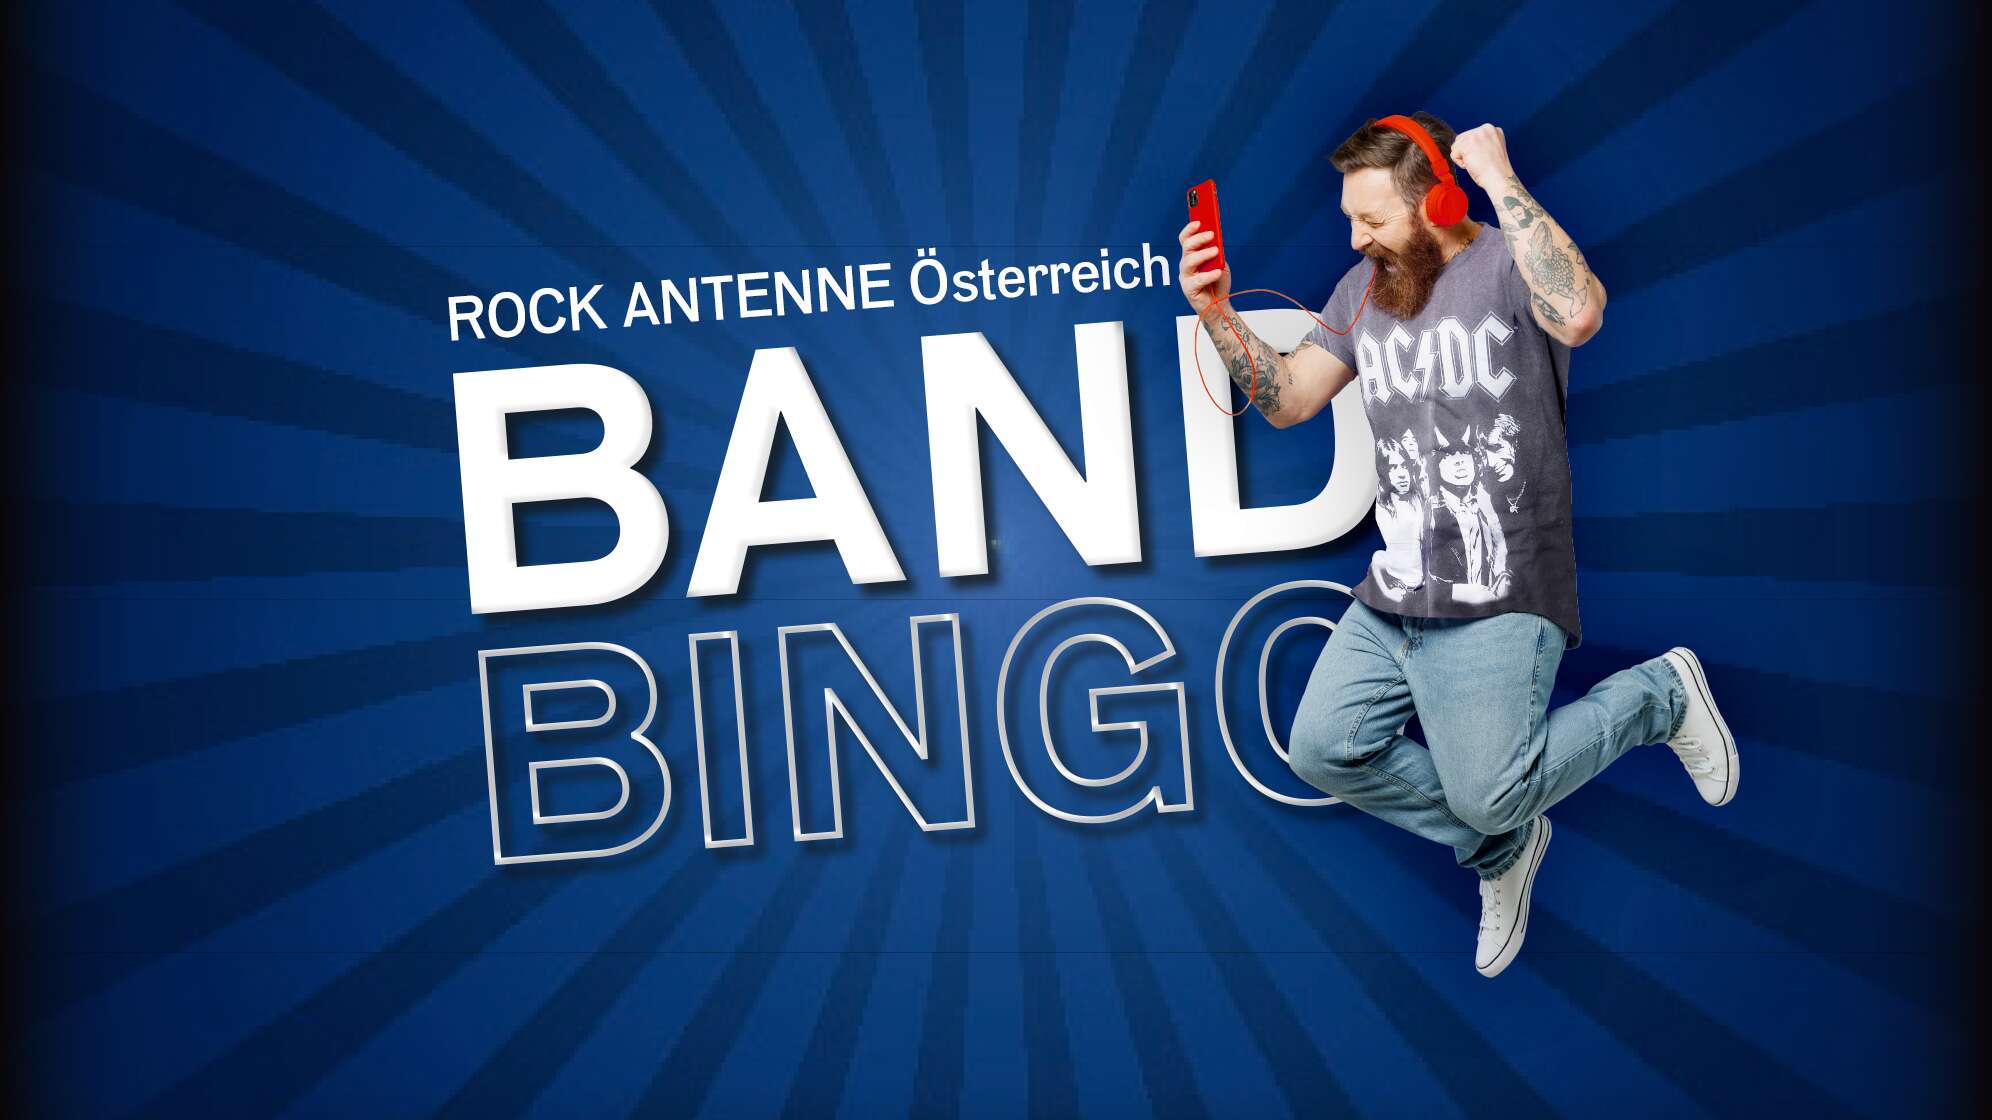 Ein jubelnder Mann mit AC/DC Shirt, Kopfhörern und Smartphone und dazu der Text "ROCK ANTENNE Österreich Band Bingo"